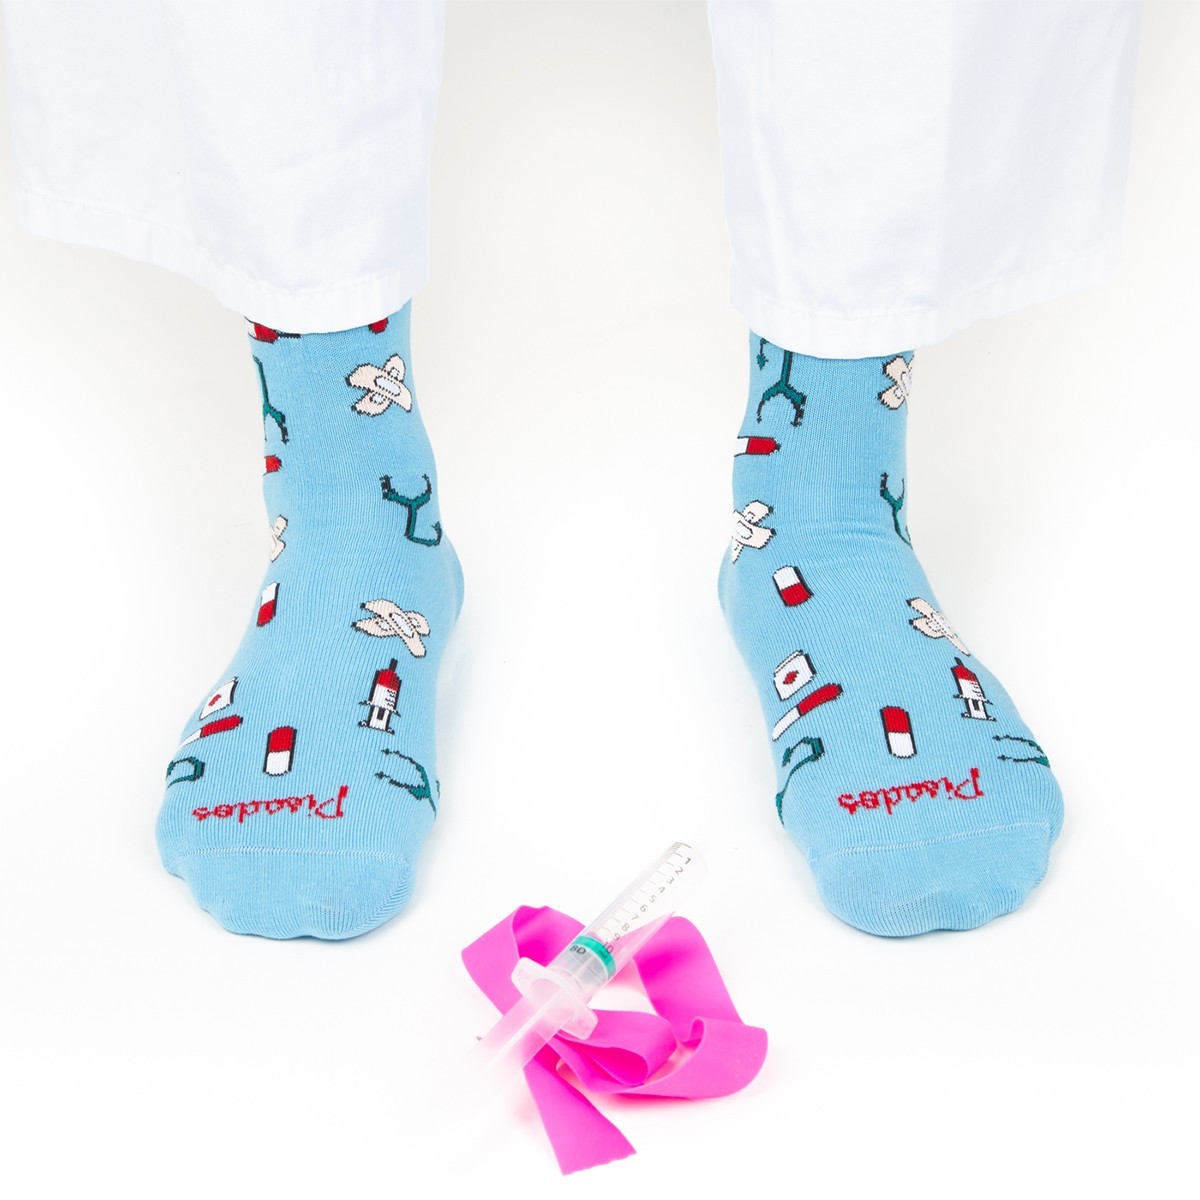 6 pares de calcetines casuales para enfermeras, regalos de enfermería,  calcetines novedosos para mujer, calcetines médicos divertidos para  enfermeras